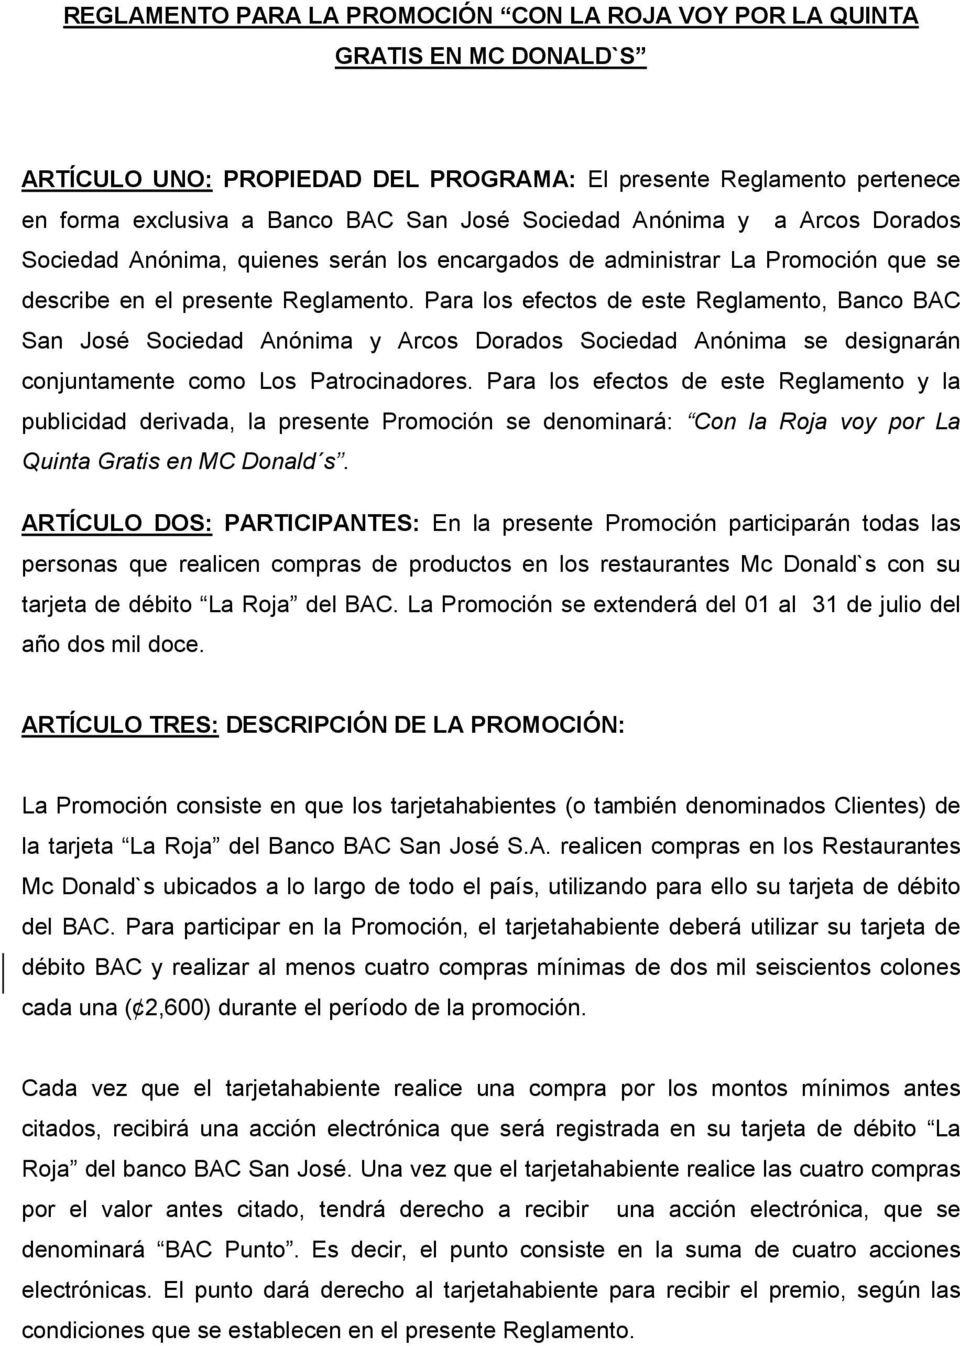 Para los efectos de este Reglamento, Banco BAC San José Sociedad Anónima y Arcos Dorados Sociedad Anónima se designarán conjuntamente como Los Patrocinadores.